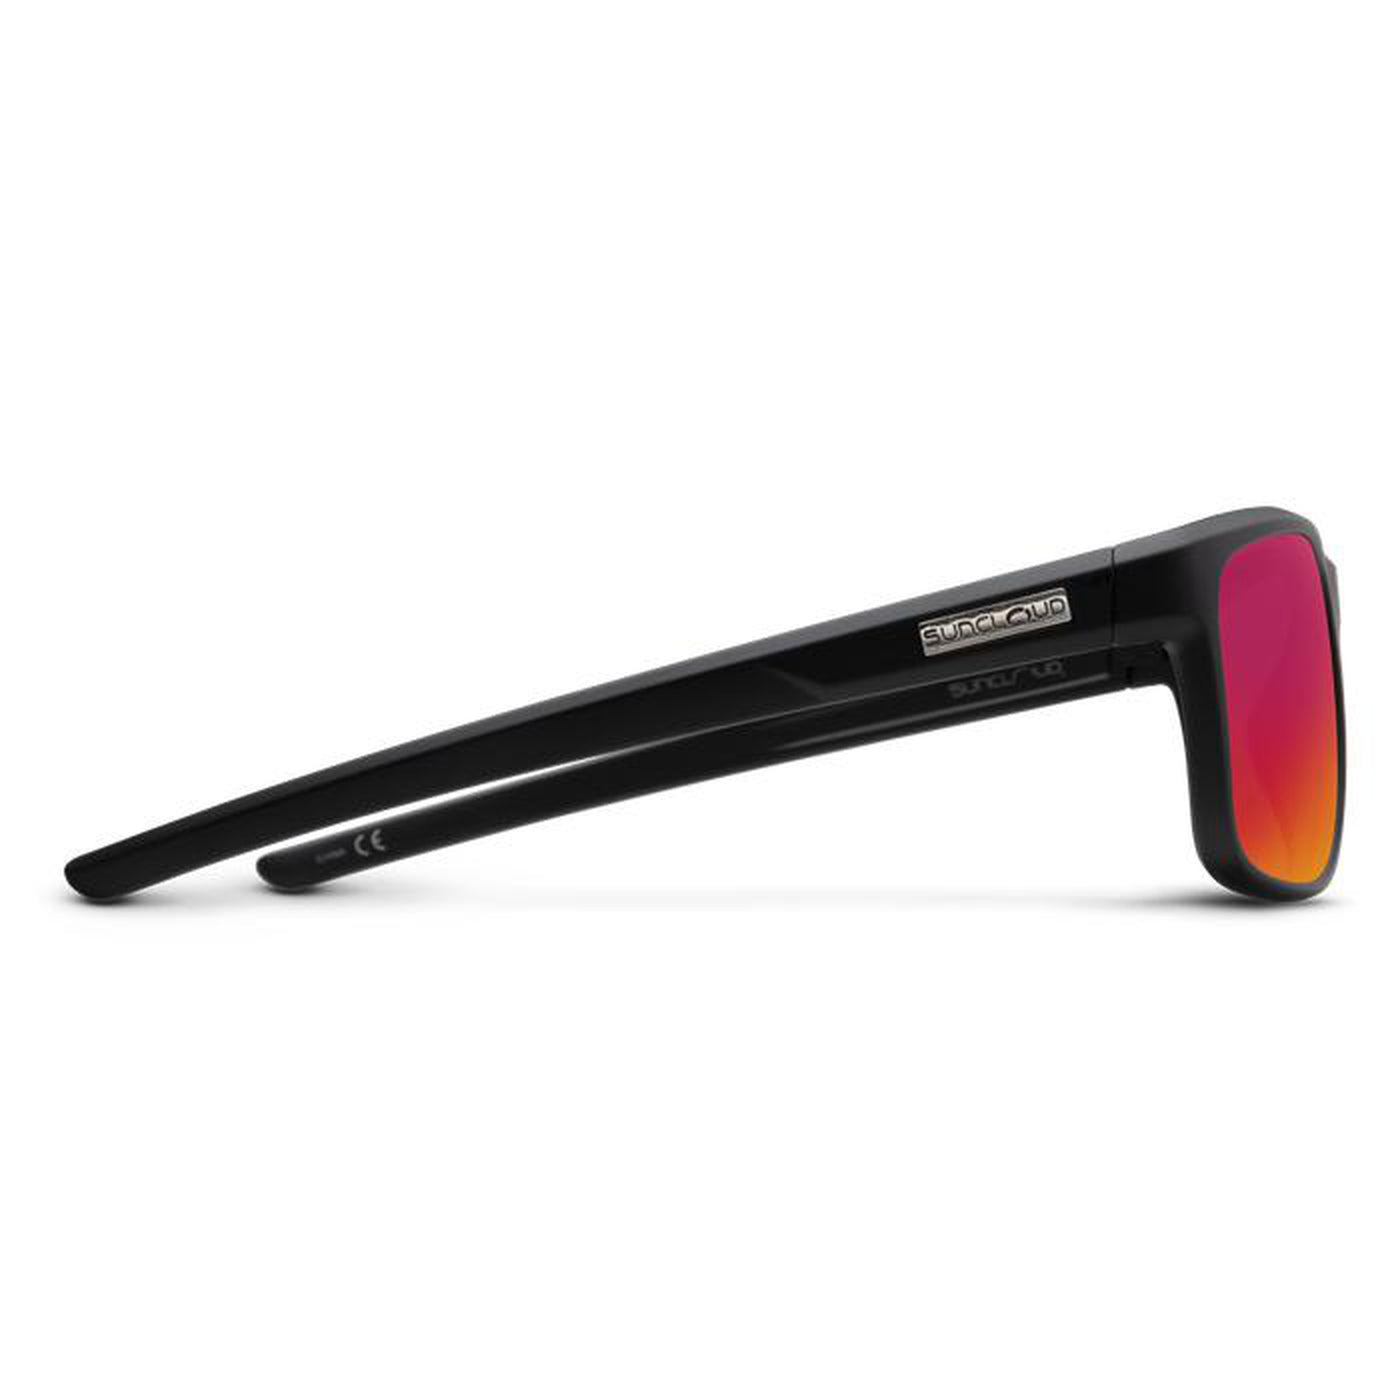 Suncloud Respek-Polarized Sunglasses-Topline Eyewear